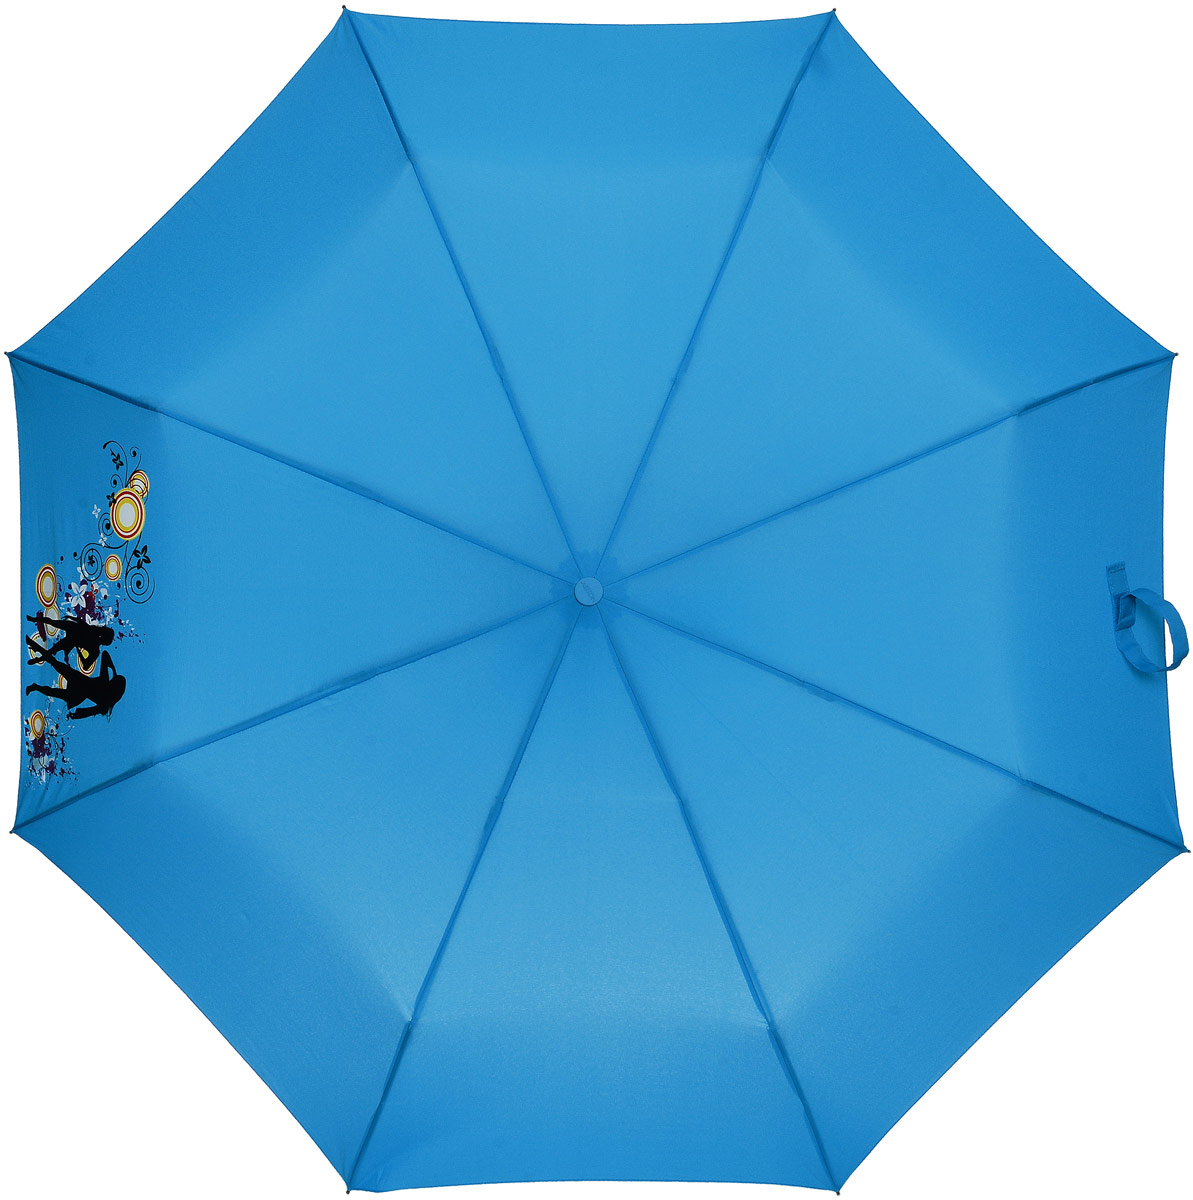 Зонт женский Airton, автомат, 3 сложения, цвет: голубой, оранжевый. 3917-228